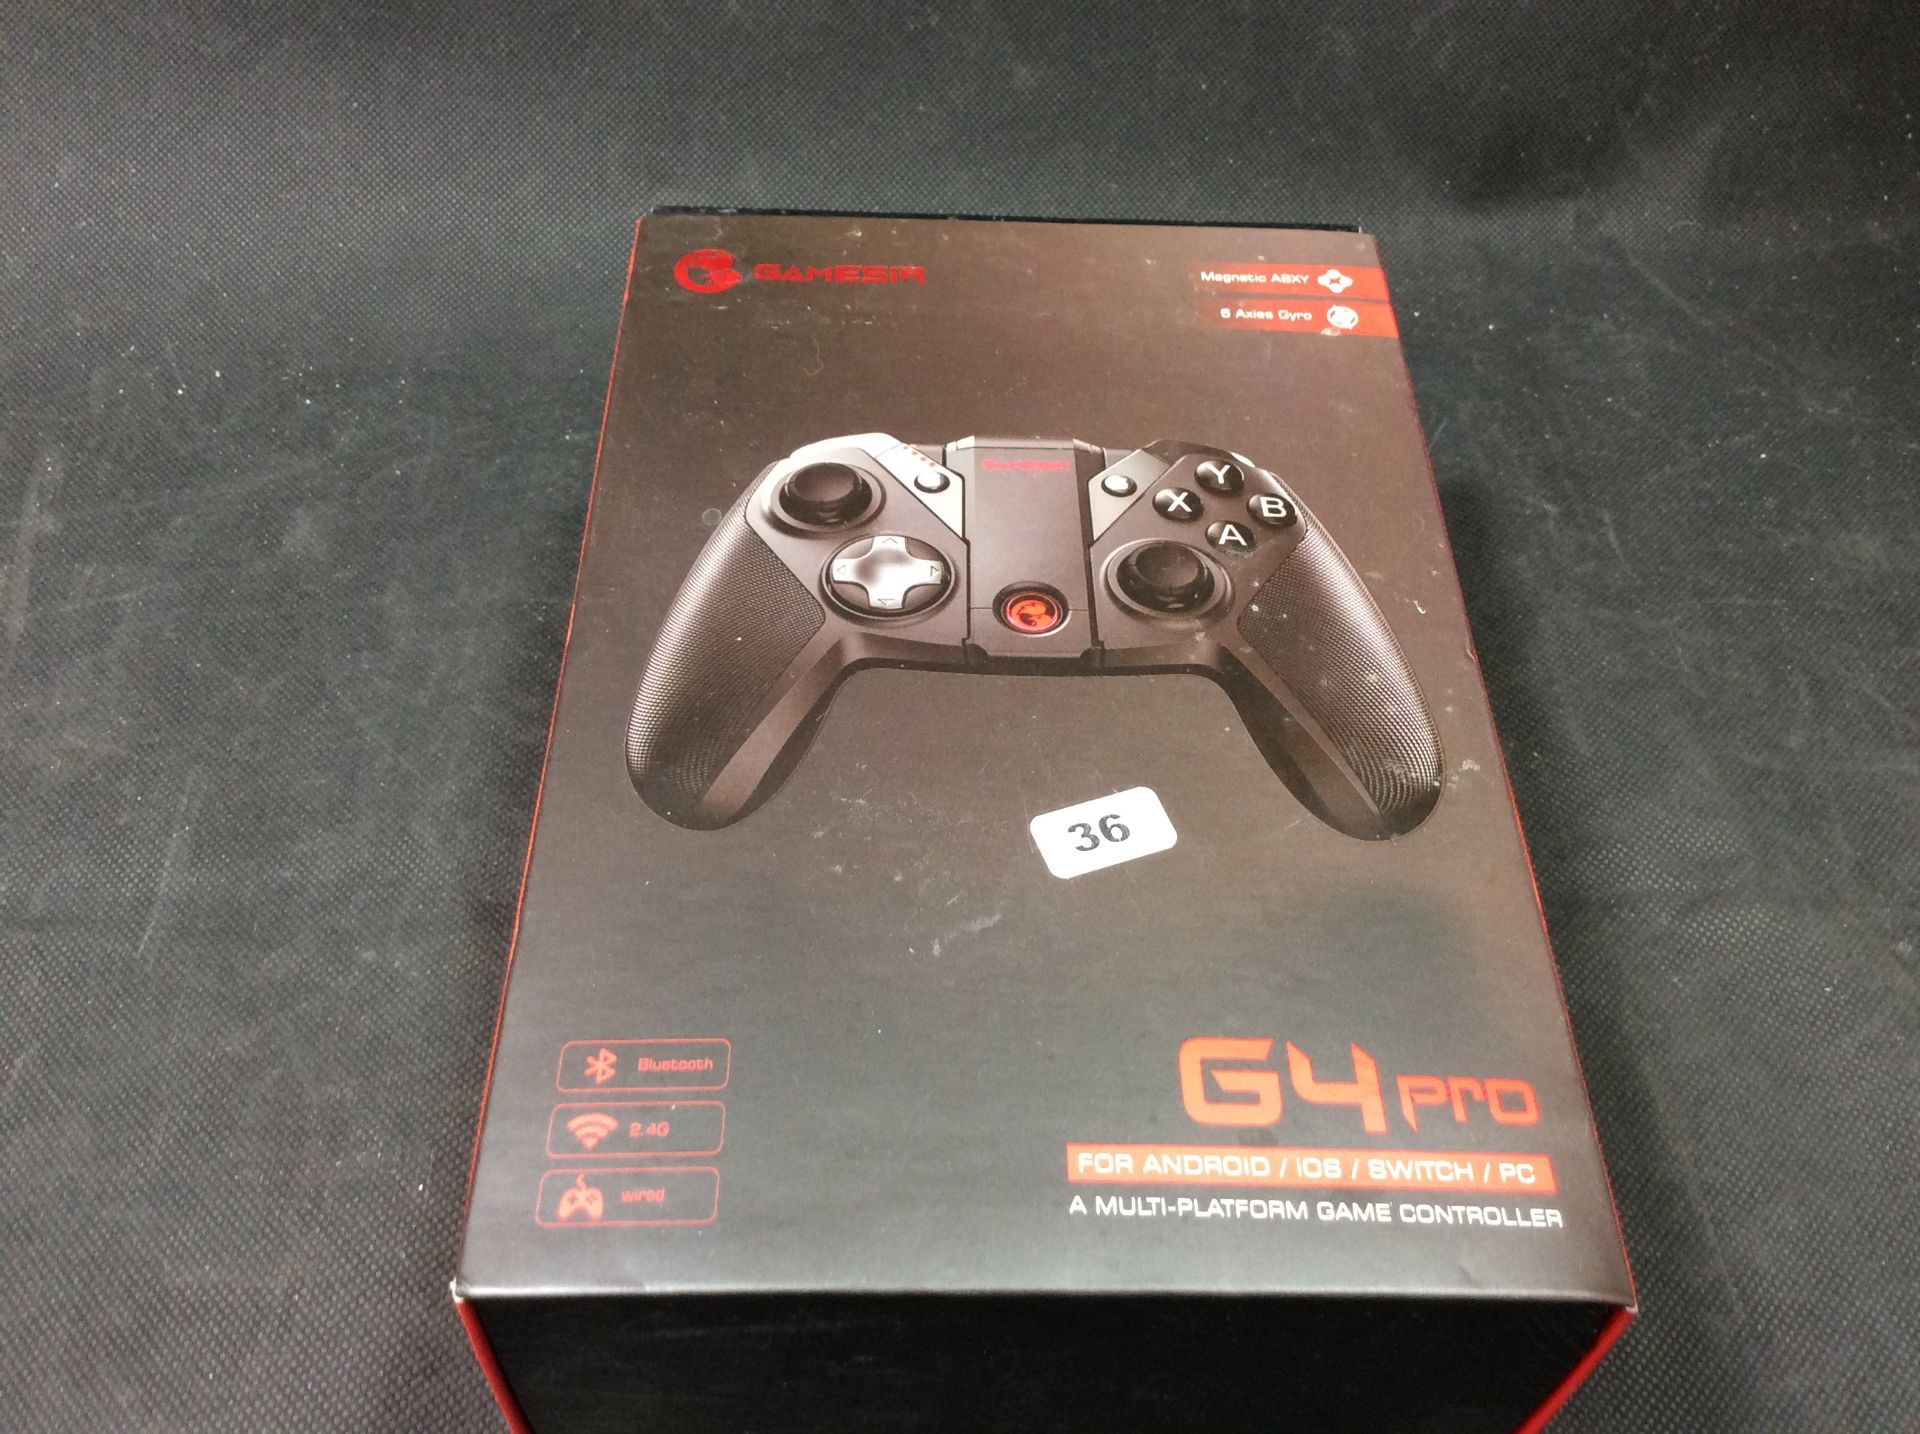 Gamesir Multi Platform Game Controller G4 Pro